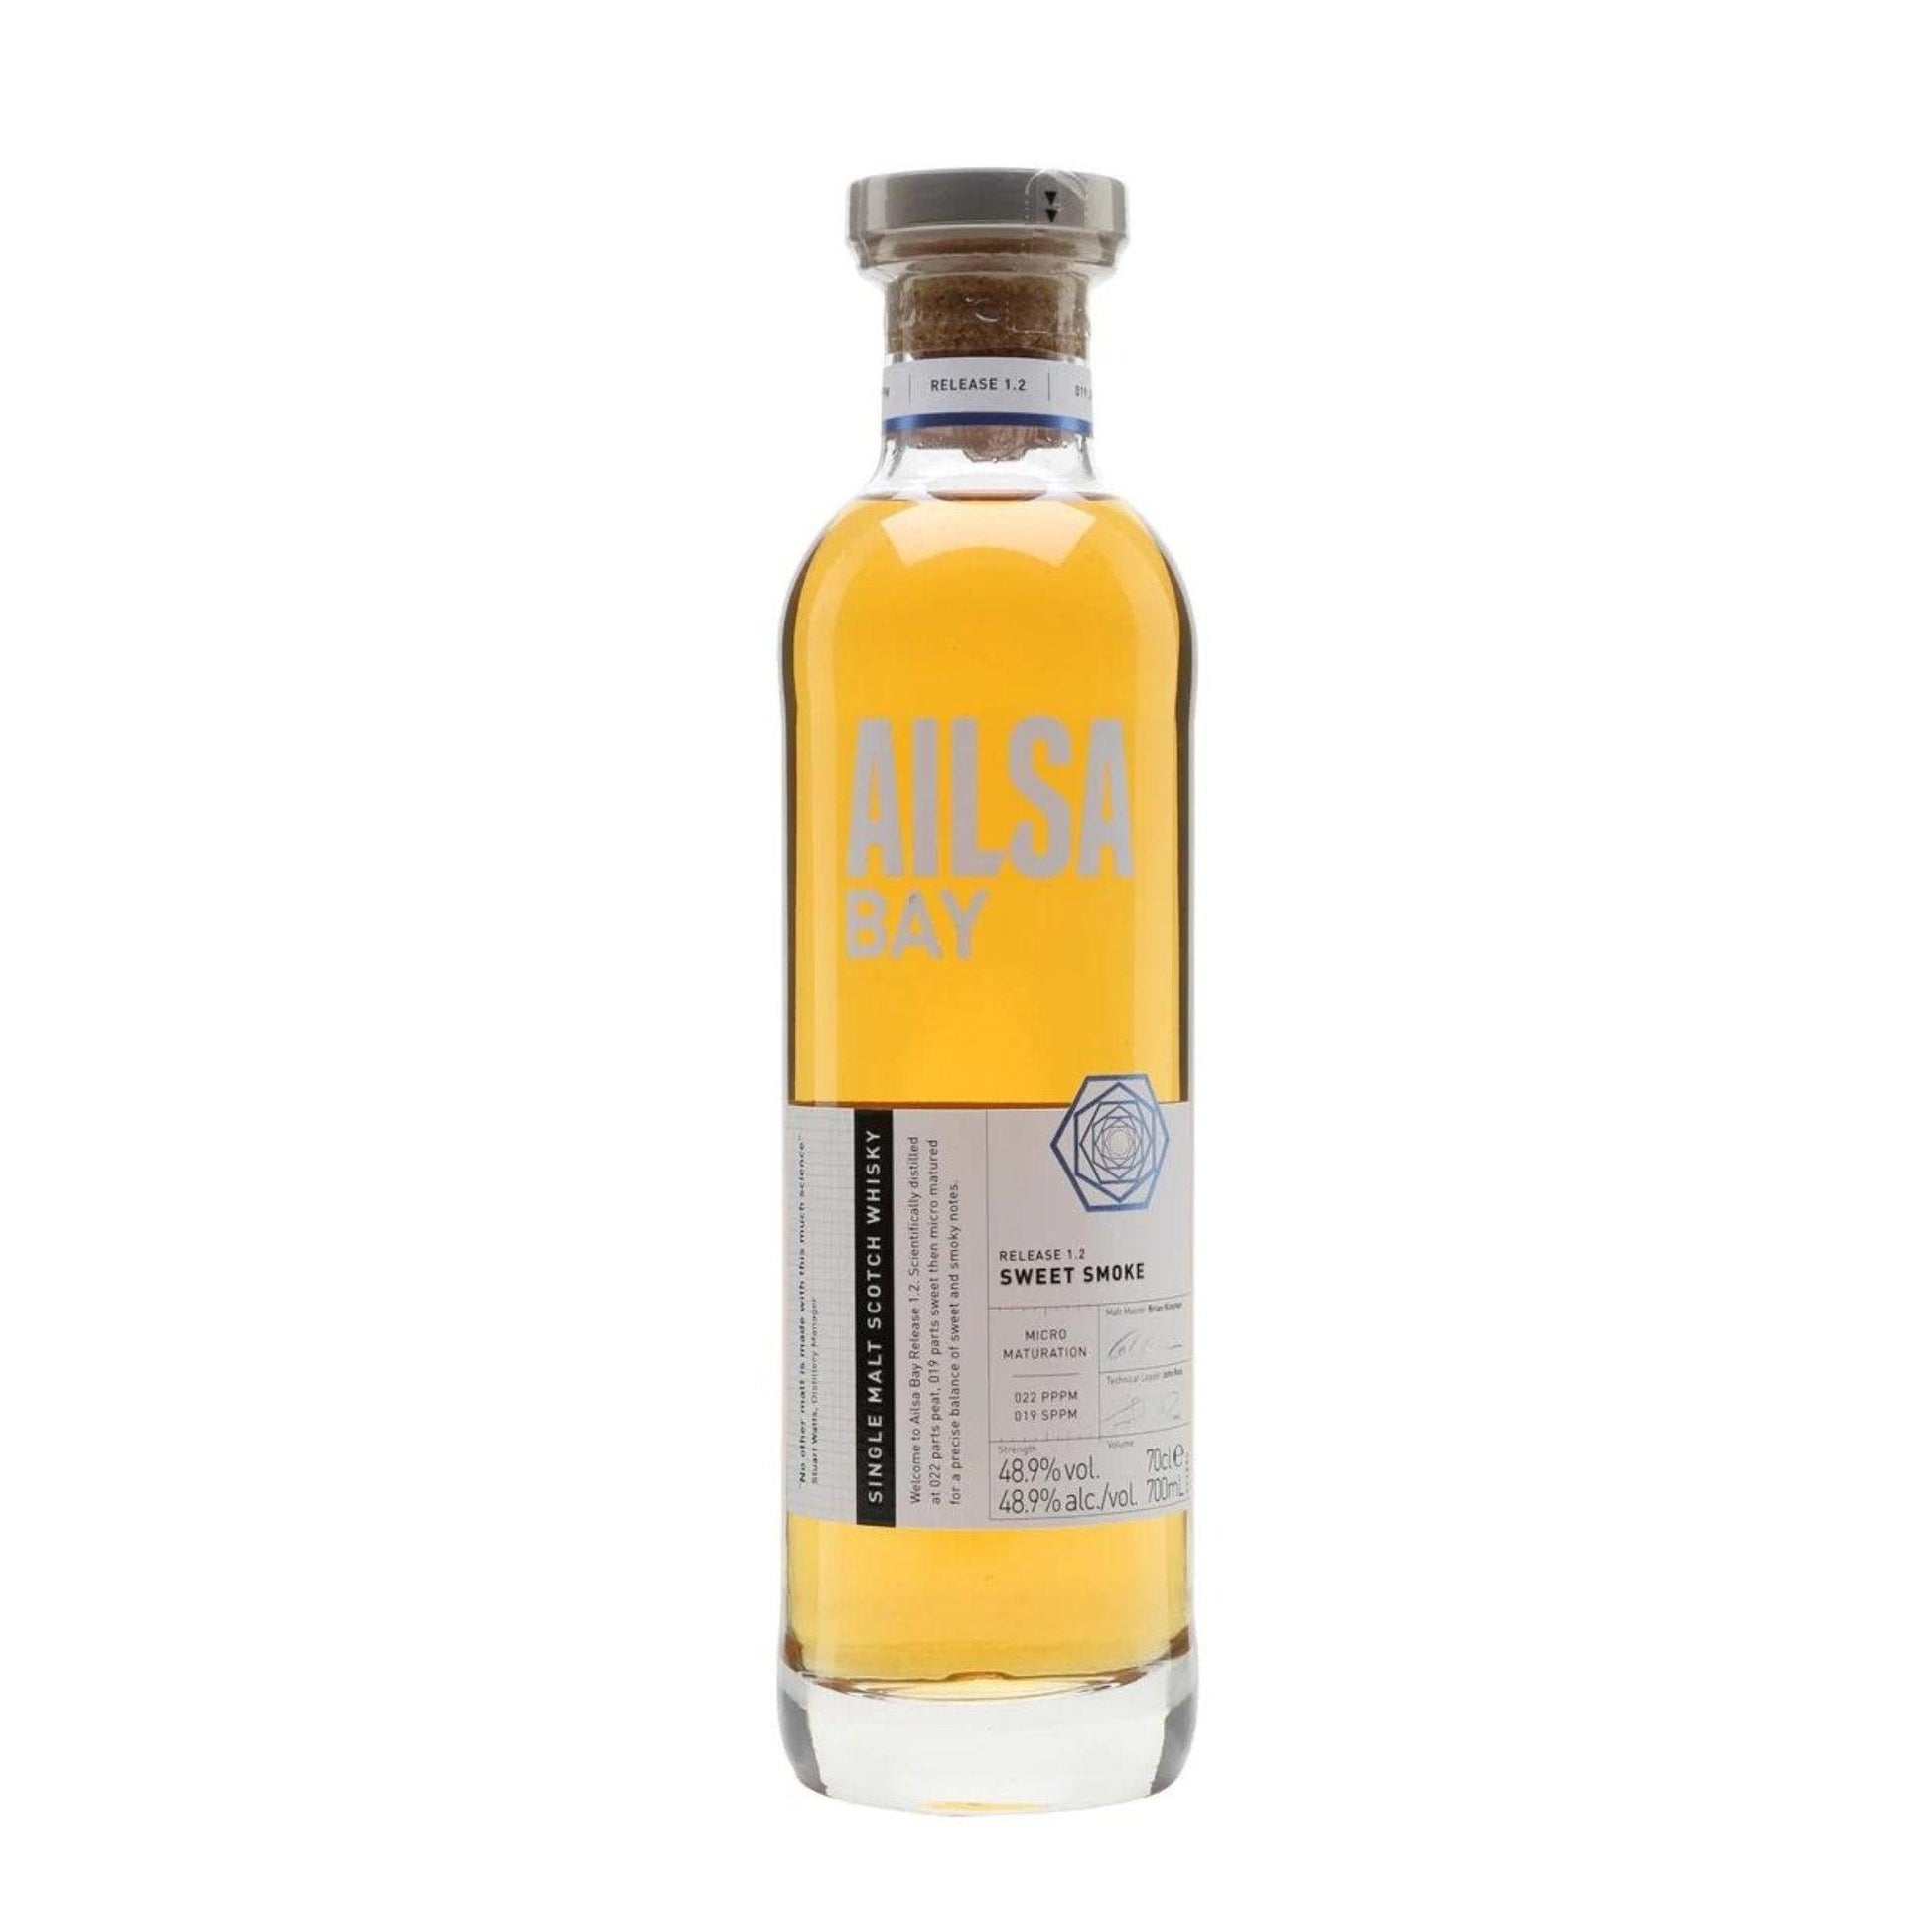 Ailsa Bay Single Malt Scotch Whisky 700mL - Booze House